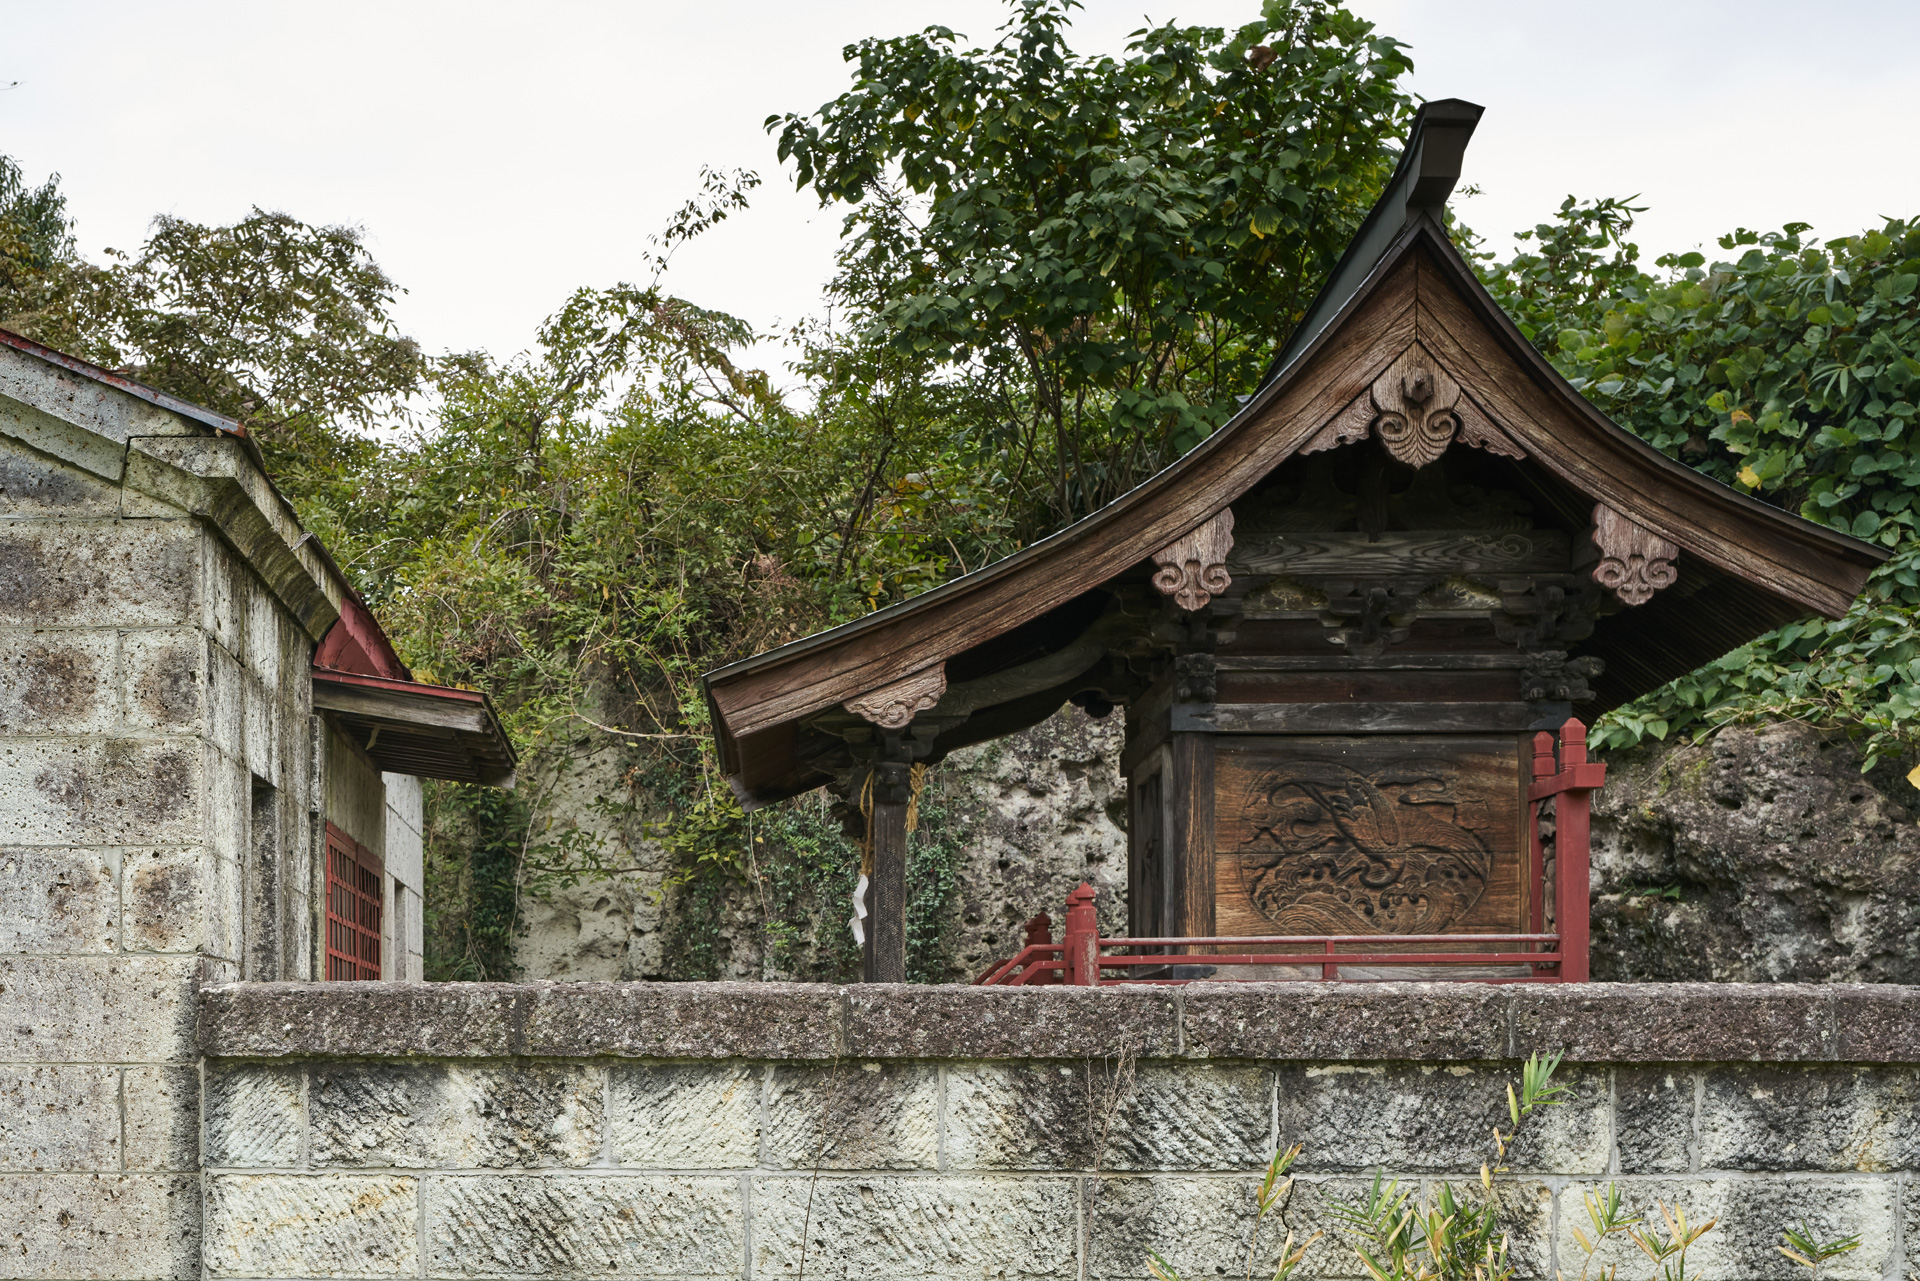 立岩神社